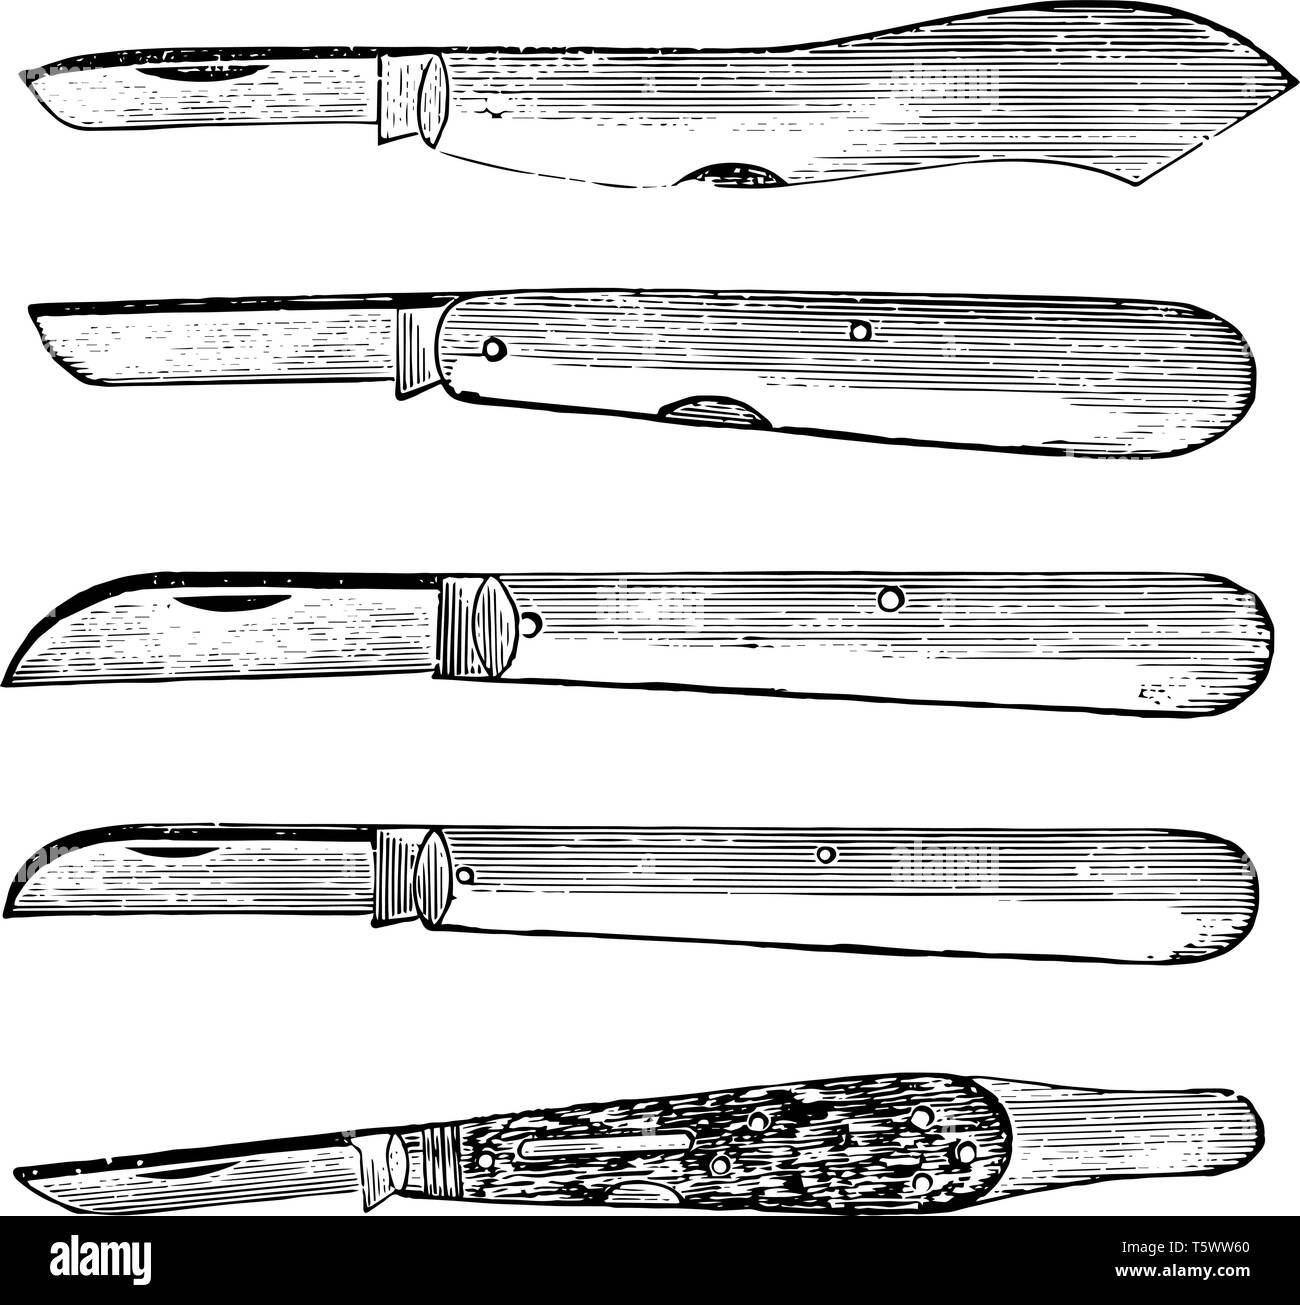 Cette illustration représente les couteaux en herbe qui sert à des fins ordinaires vintage dessin ou gravure illustration. Illustration de Vecteur